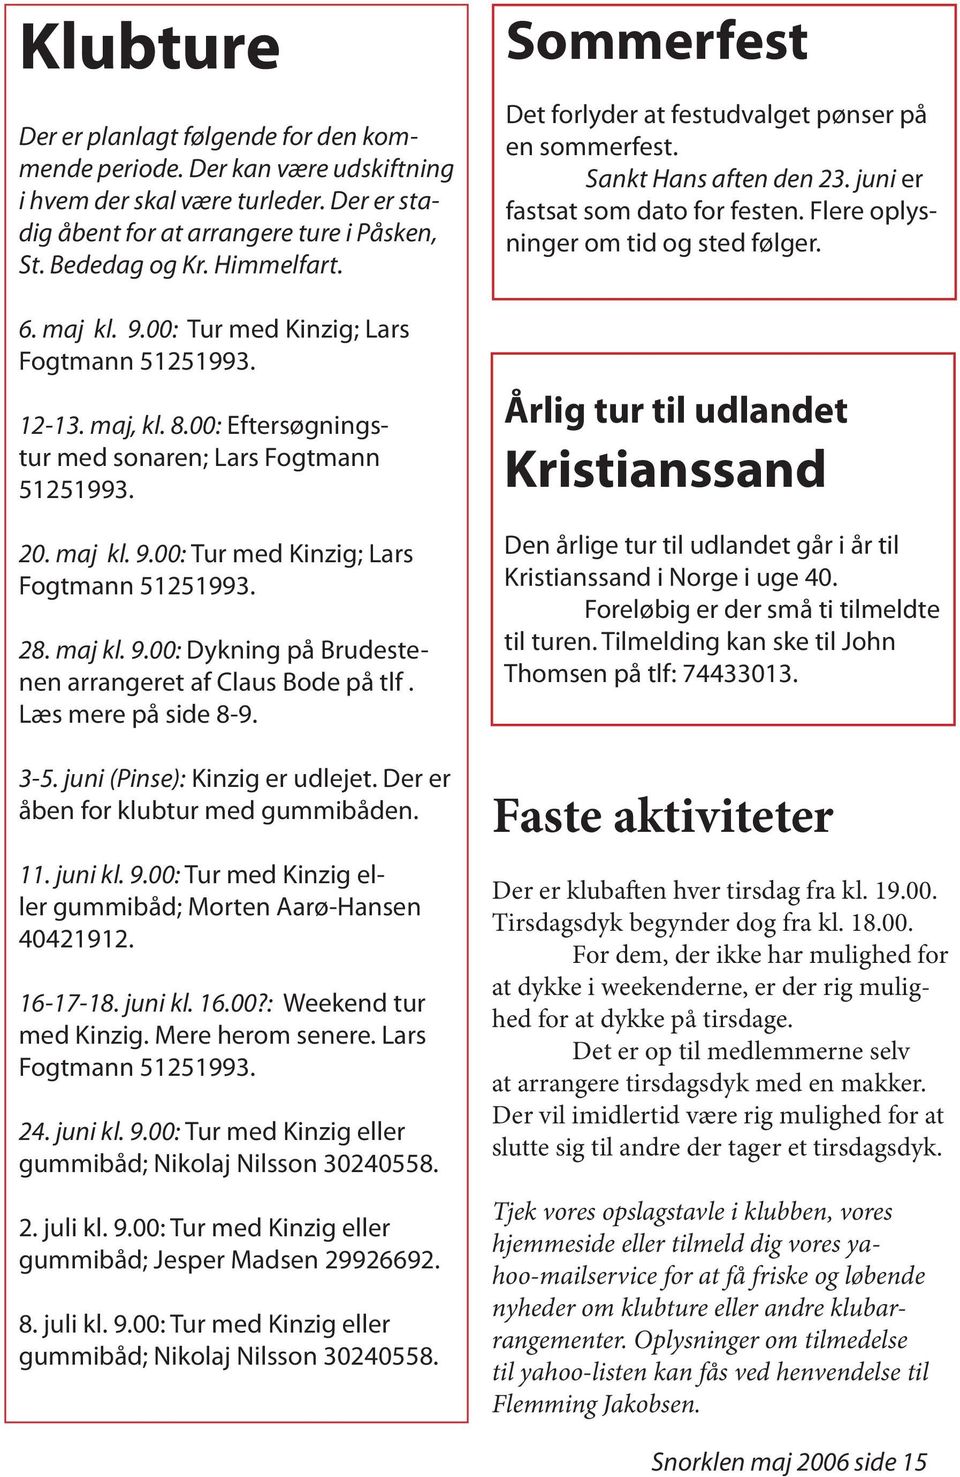 maj kl. 9.00: Dykning på Brudestenen arrangeret af Claus Bode på tlf. Læs mere på side 8-9. 3-5. juni (Pinse): Kinzig er udlejet. Der er åben for klubtur med gummibåden. 11. juni kl. 9.00: Tur med Kinzig eller gummibåd; Morten Aarø-Hansen 40421912.